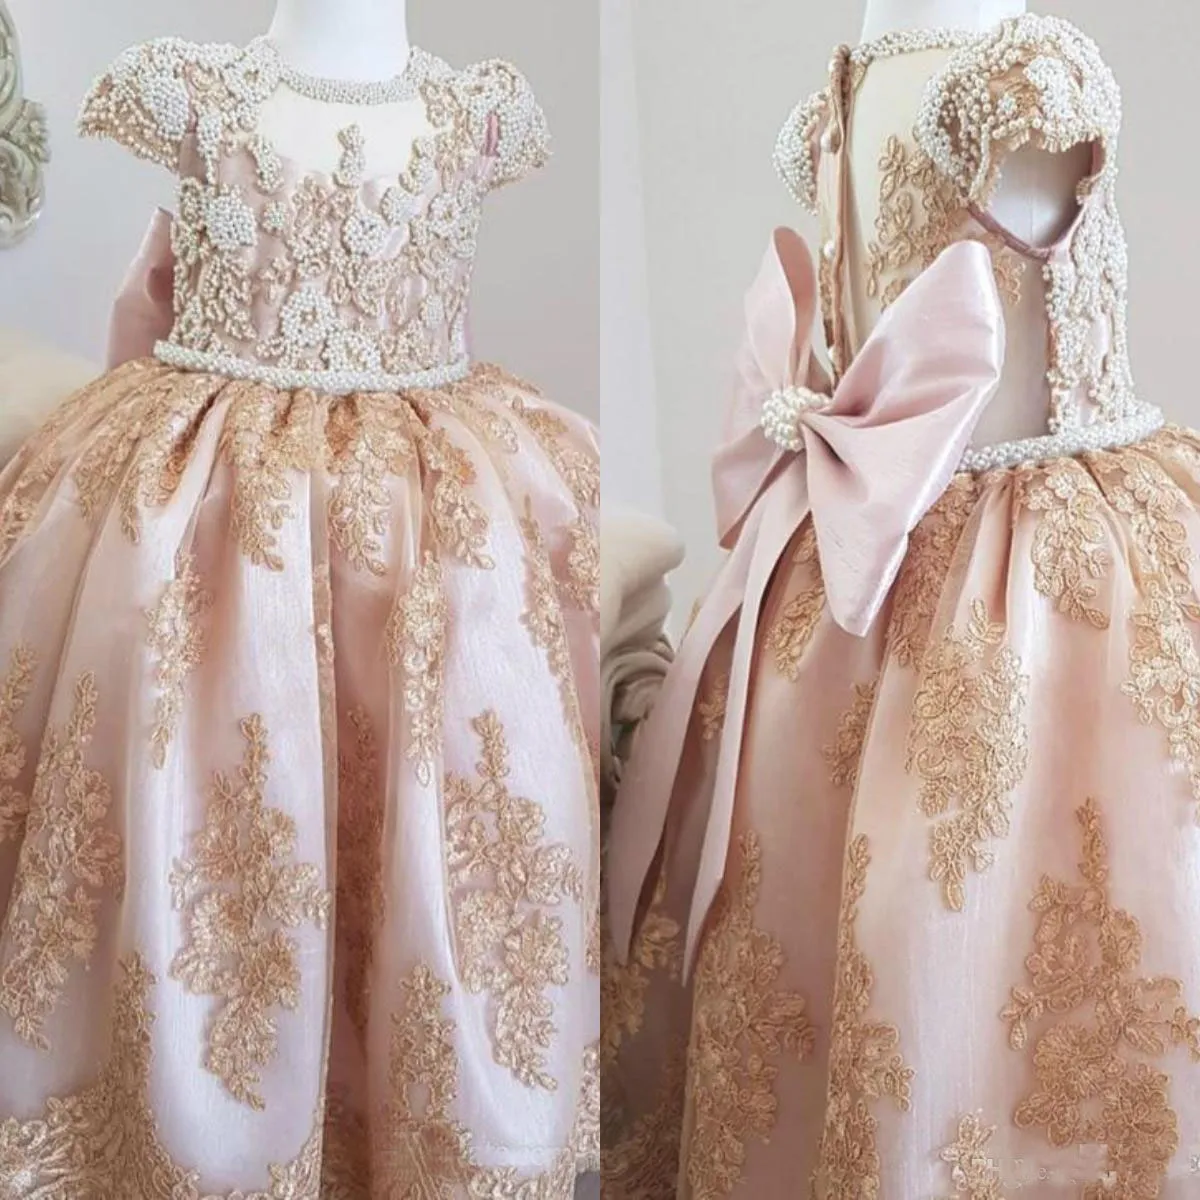 Lüks İnciler Boncuklar Dantel Çiçek Kız Elbiseler Kısa Kollu Küçük Düğün Konuk Elbiseleri Vintage Pageant Partisi Gowns